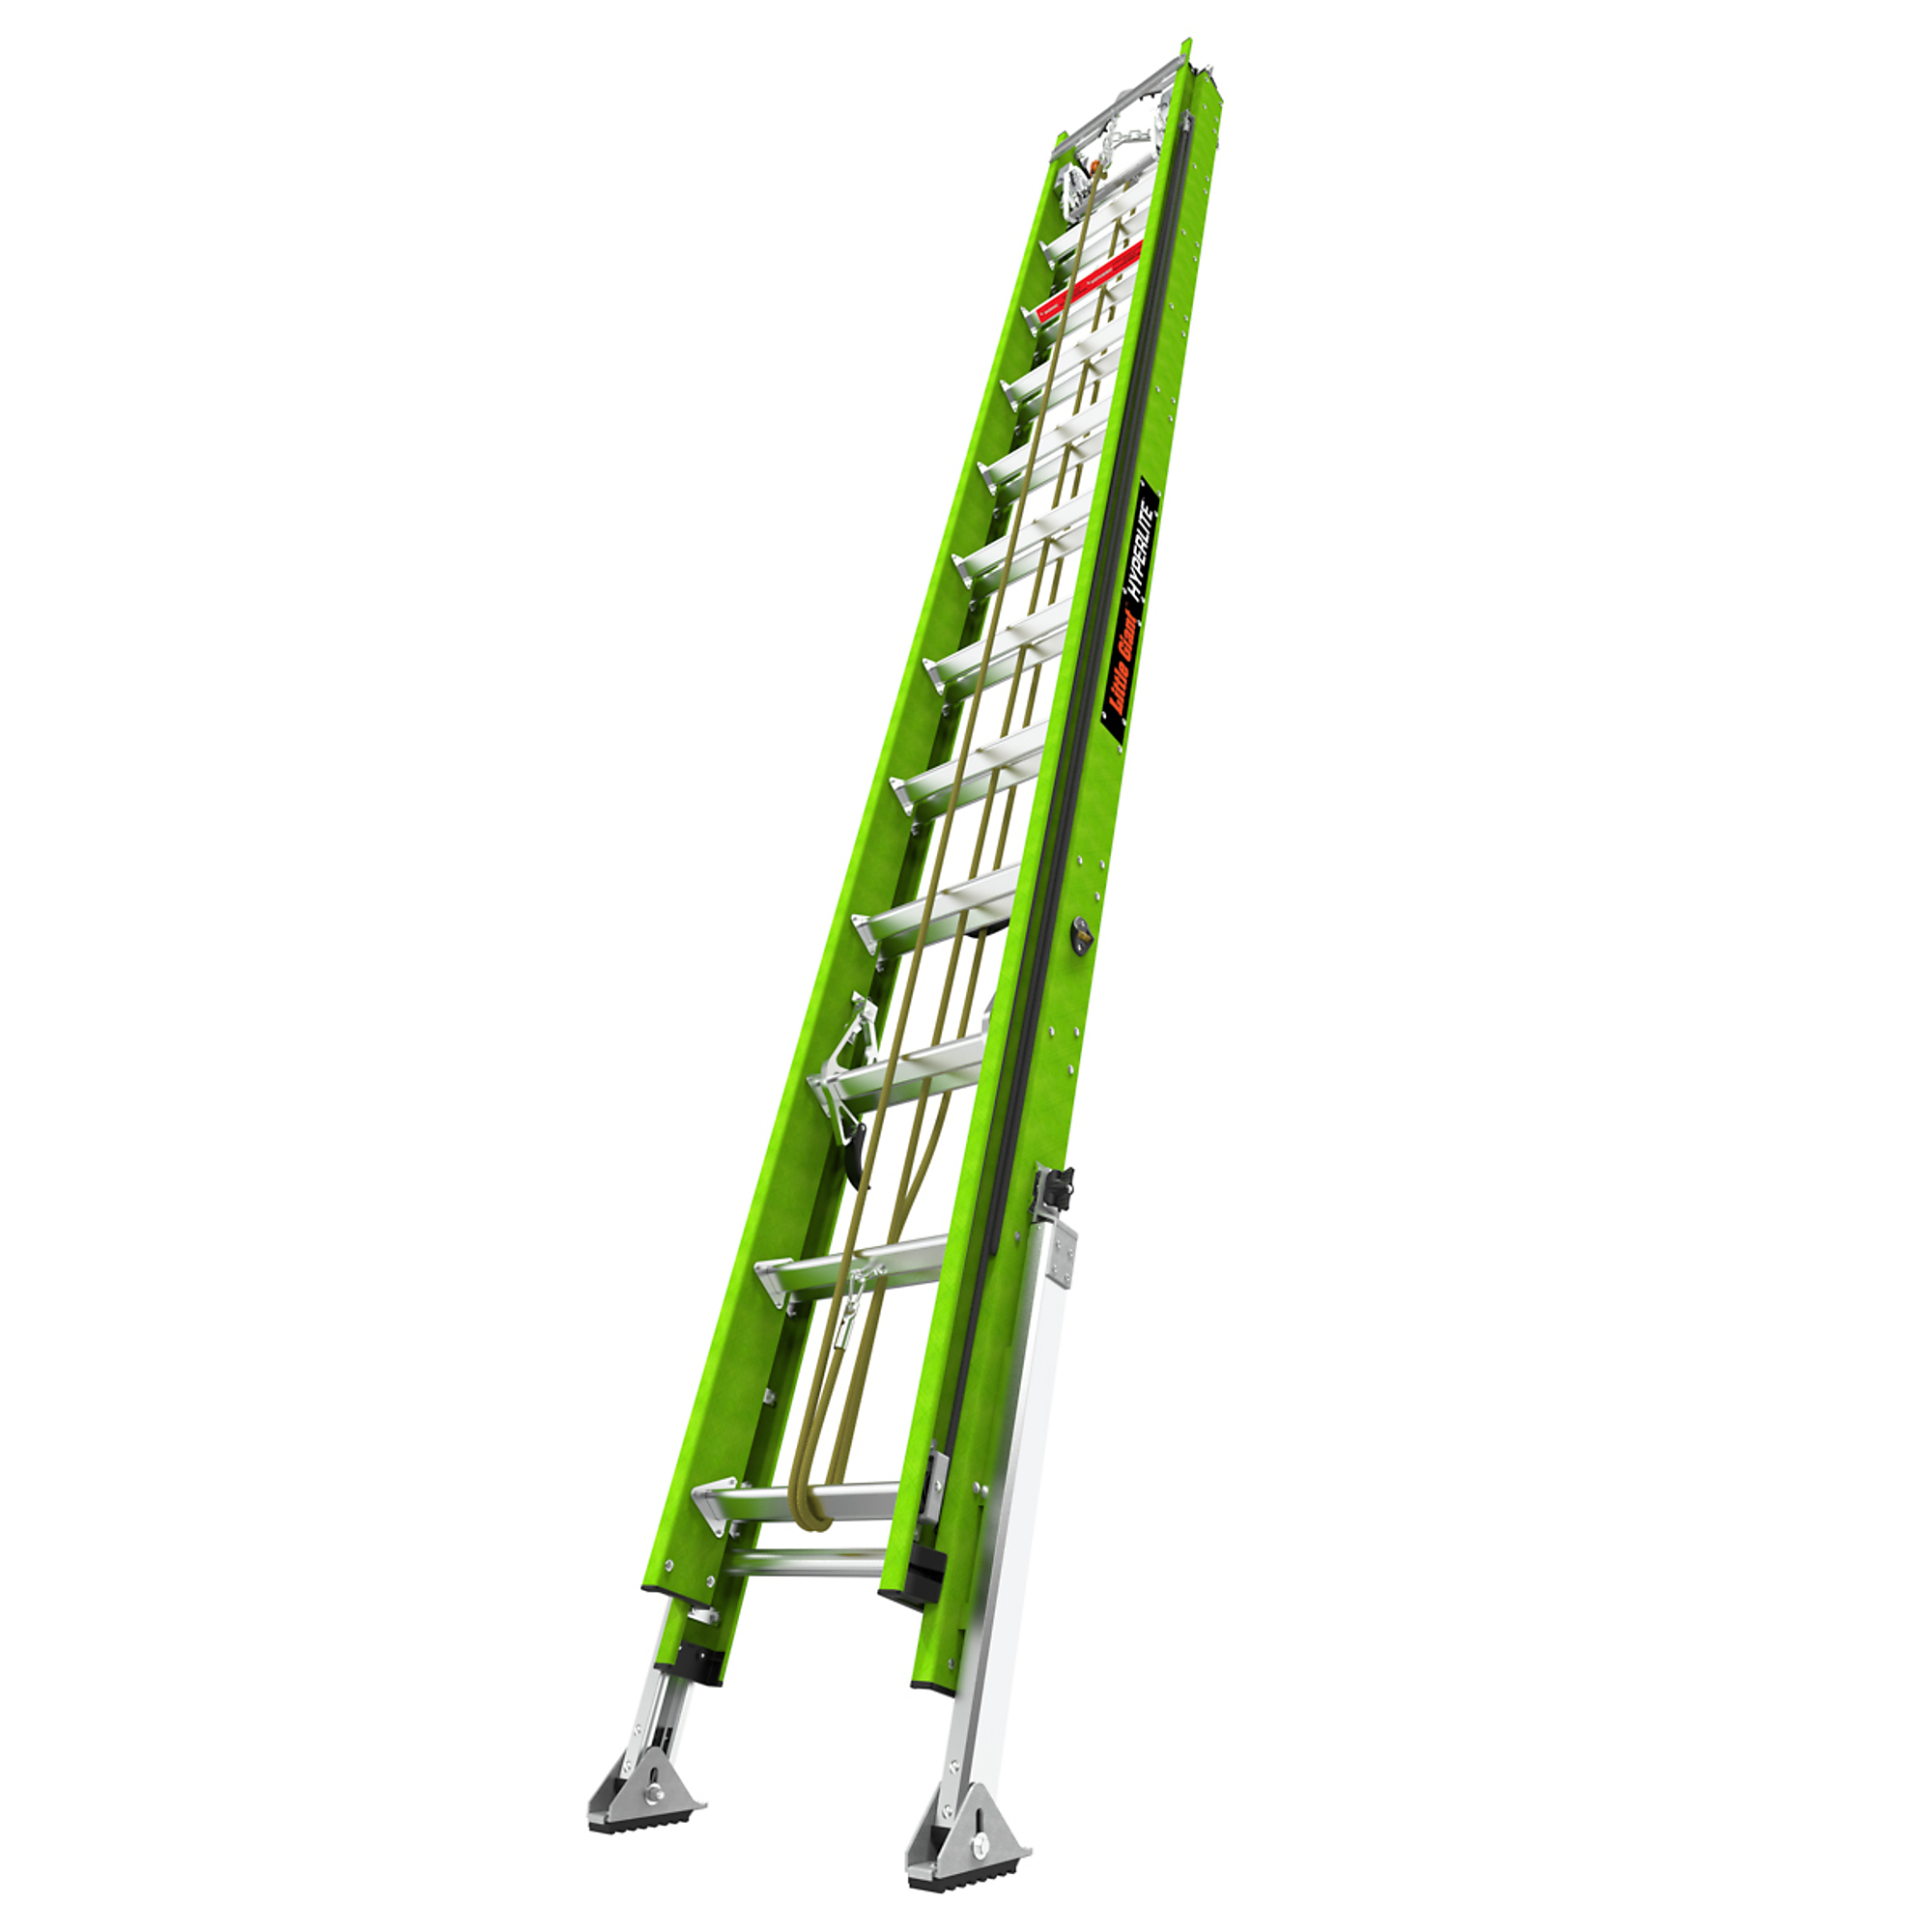 Little Giant Ladder, HYPERLITE 24 Ext Lad Hok Vbar Line autolevel PETZL, Height 24 ft, Capacity 375 lb, Material Fiberglass, Model 17524-285